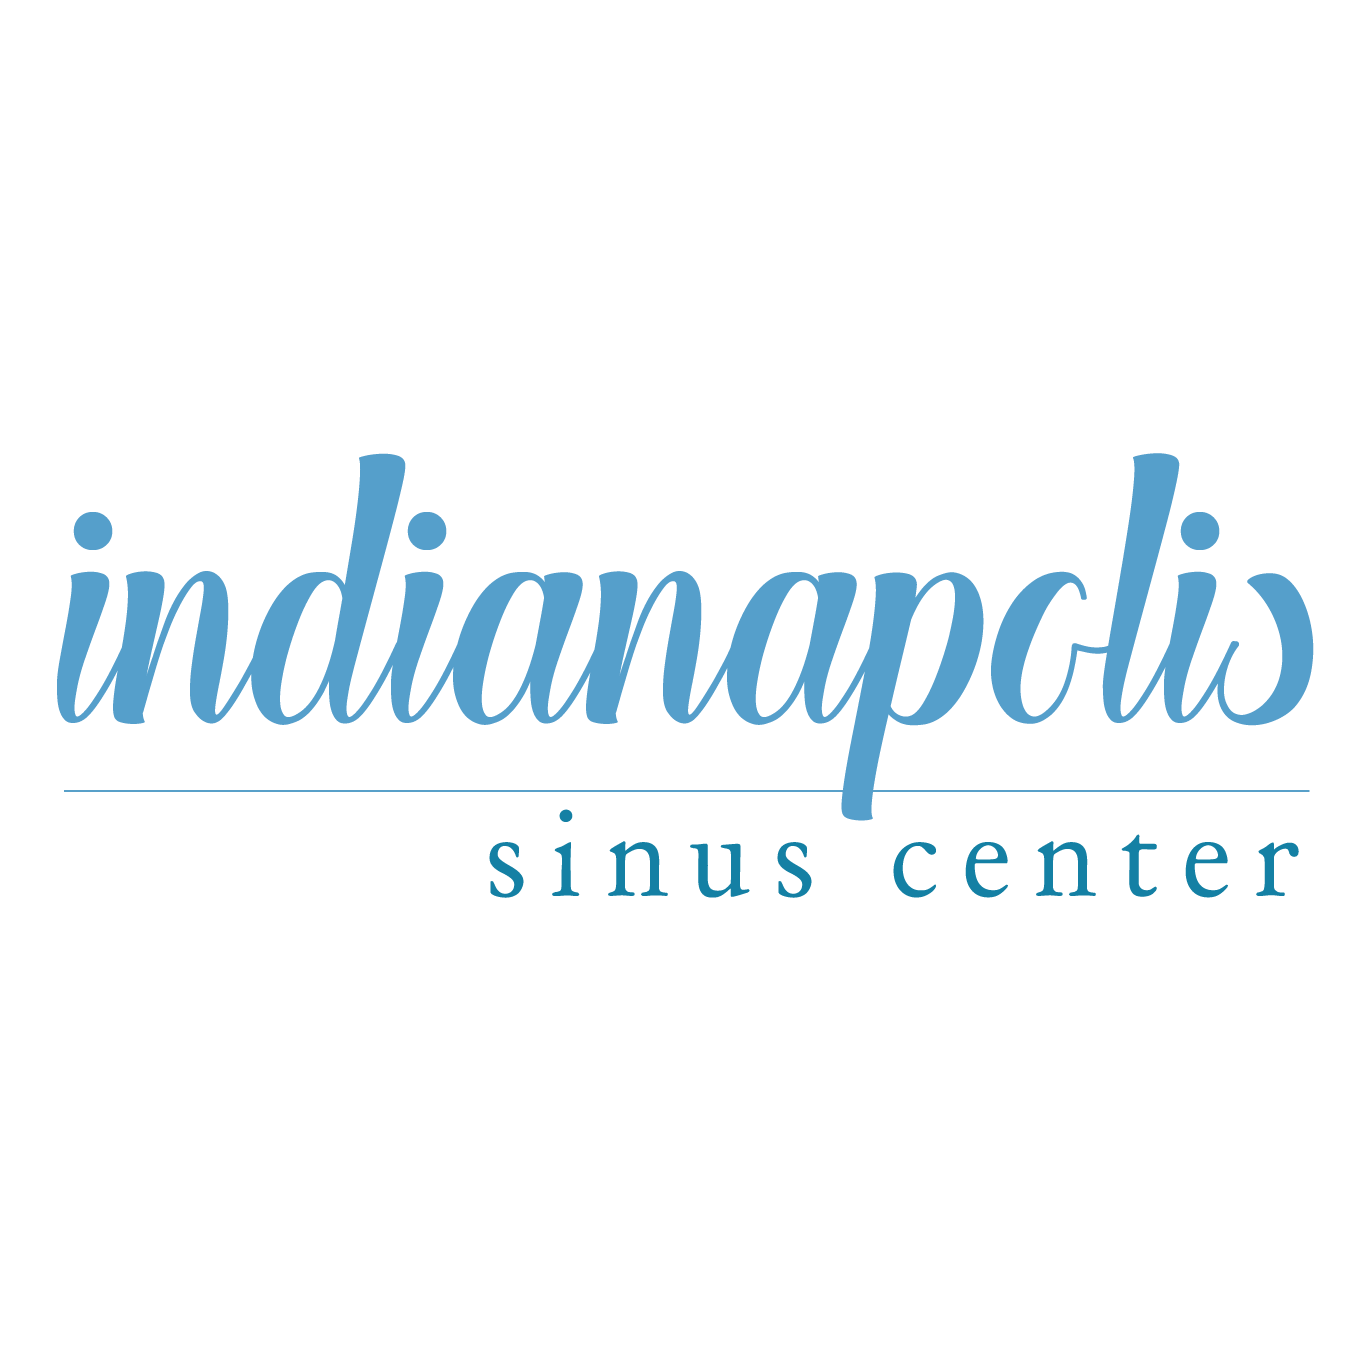 Indianapolis Sinus Center Photo